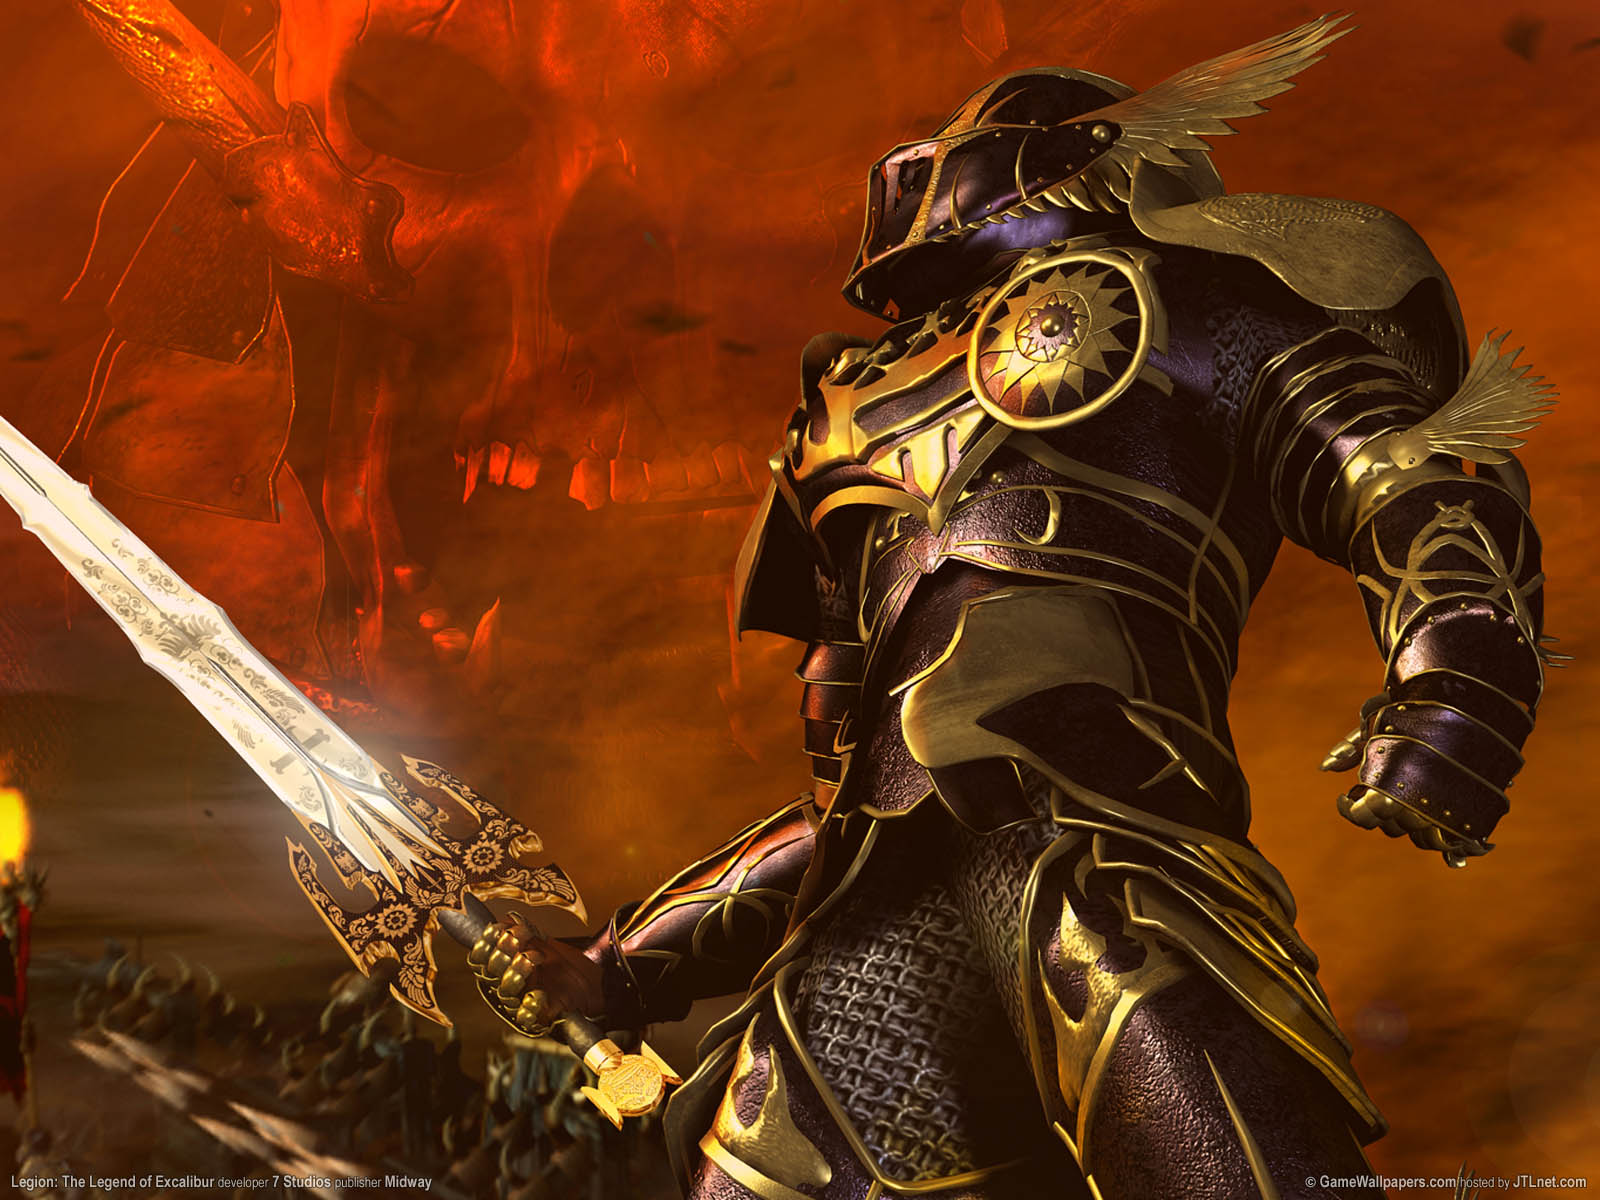 Legion: The Legend of Excalibur fond d'cran 01 1600x1200